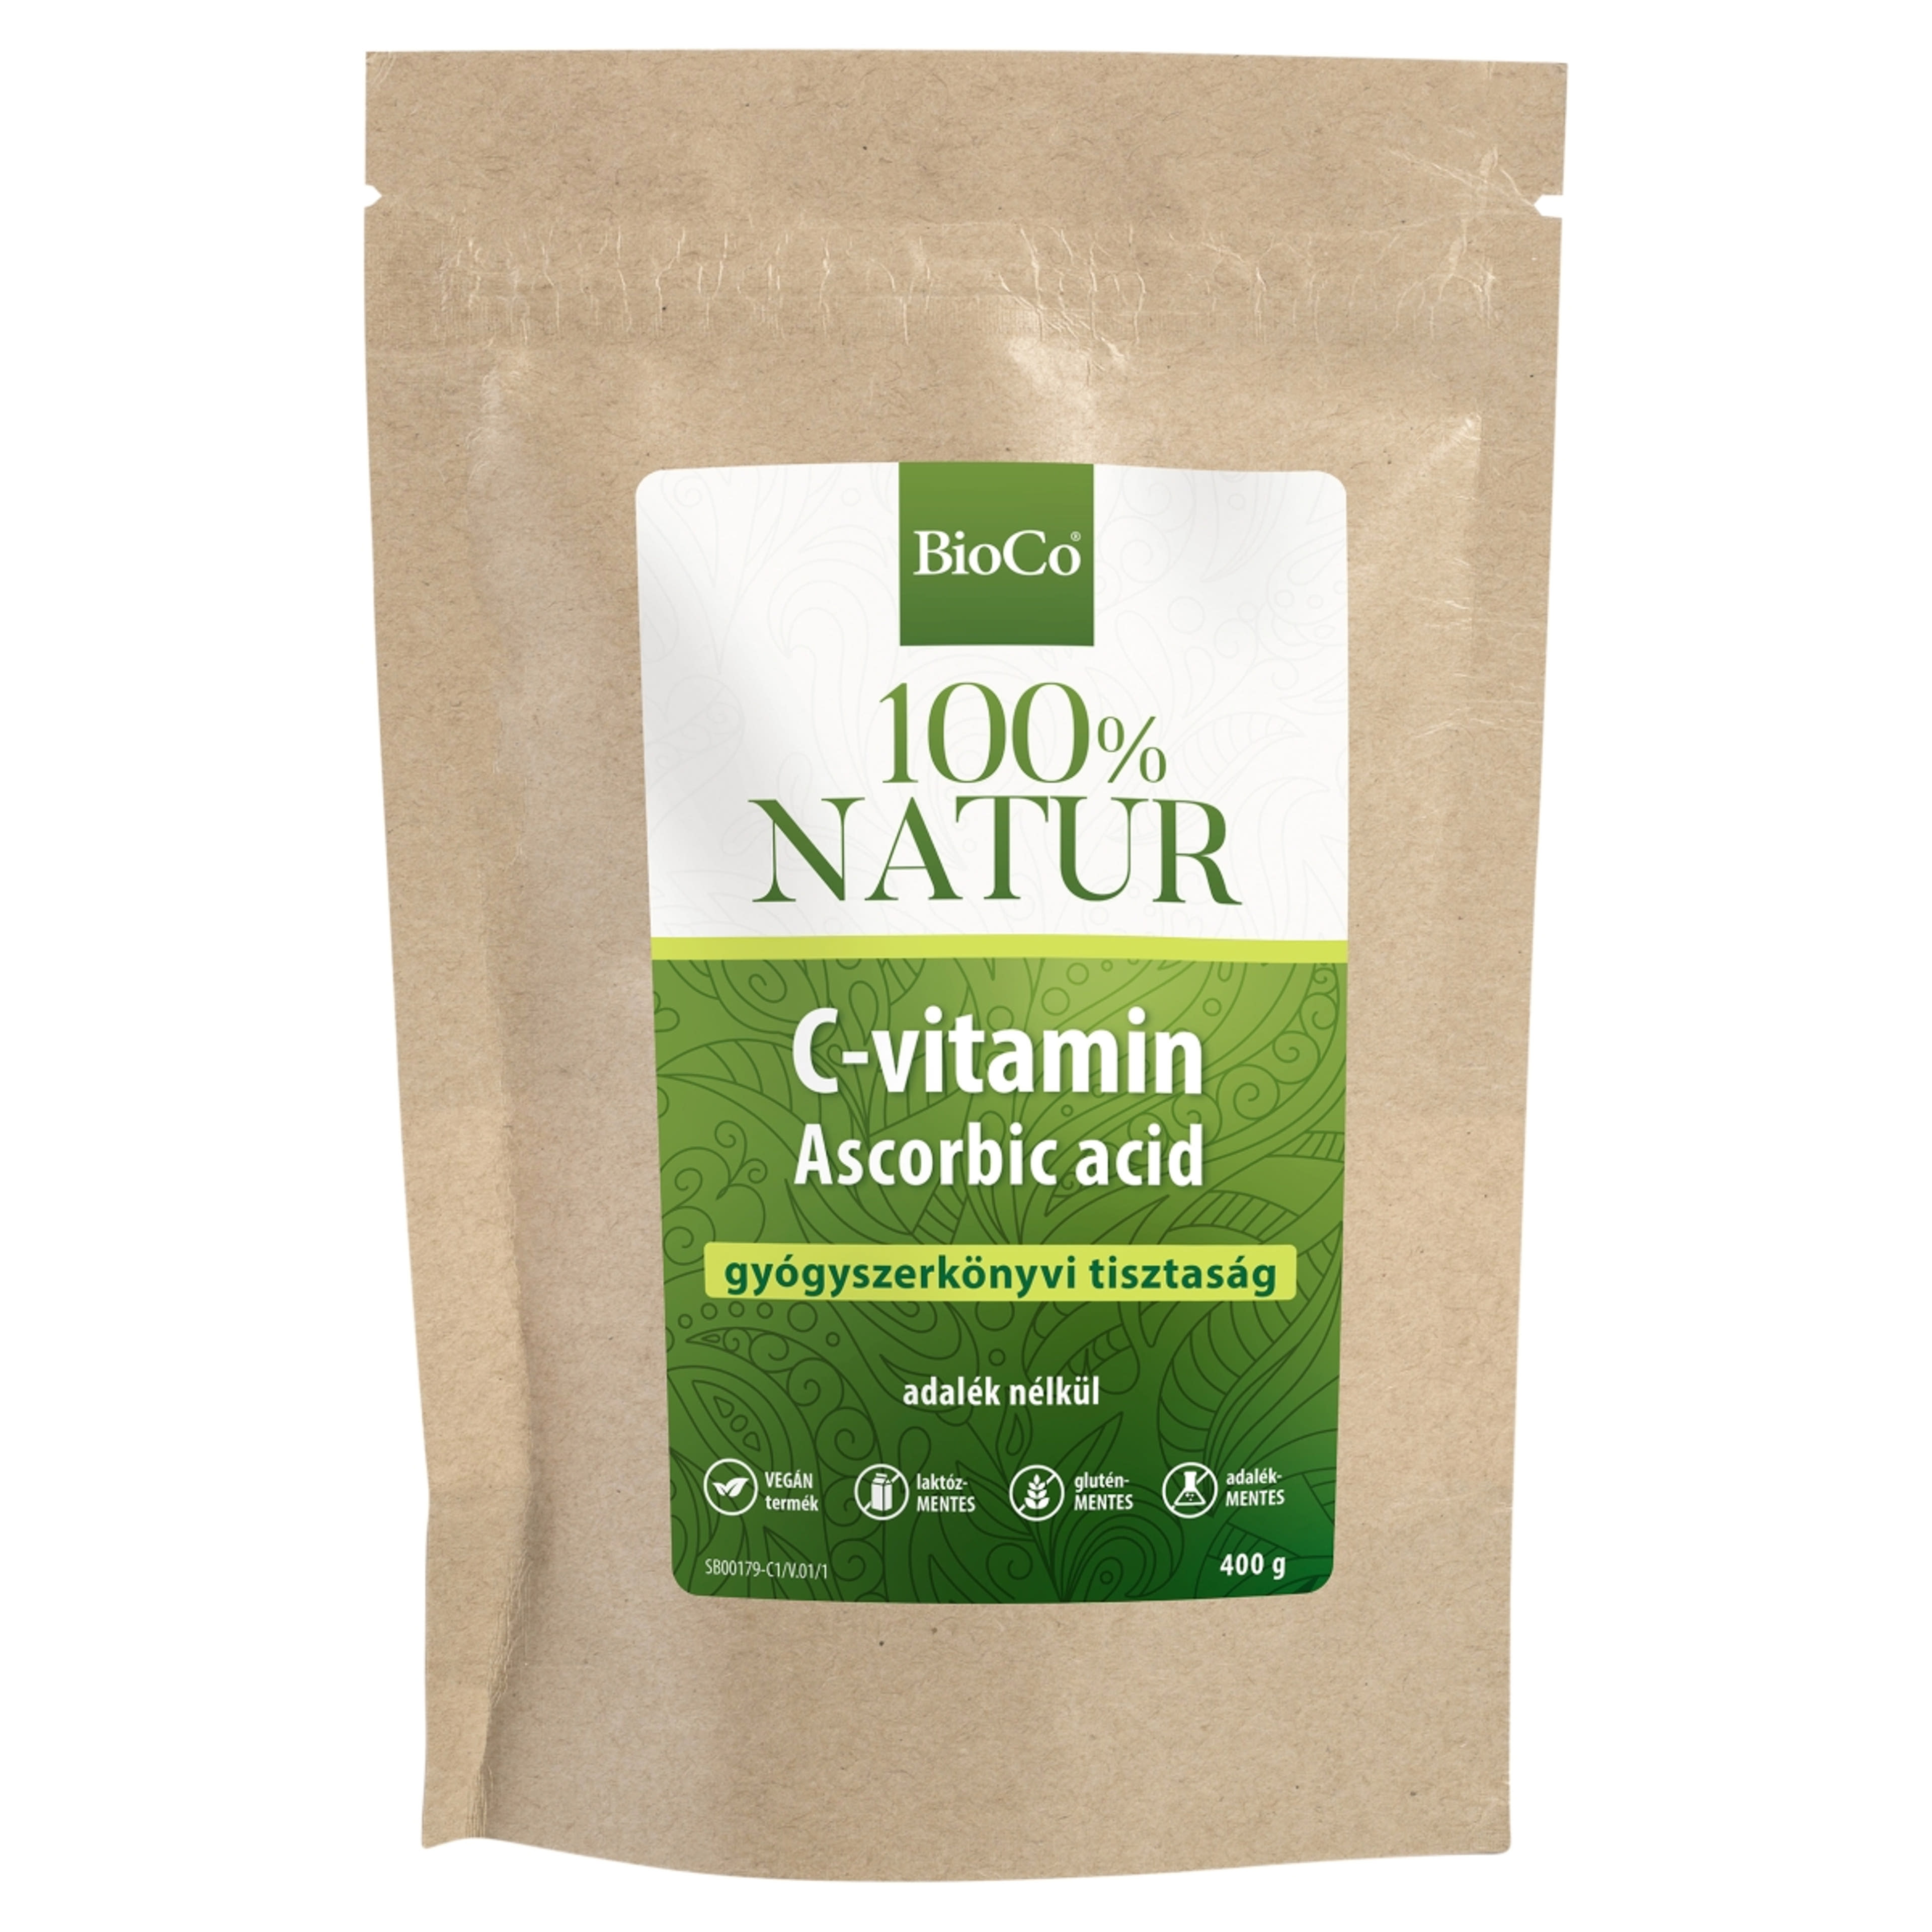 BioCo 100% Natur C-vitamin étrend-kiegészítő por - 400 g